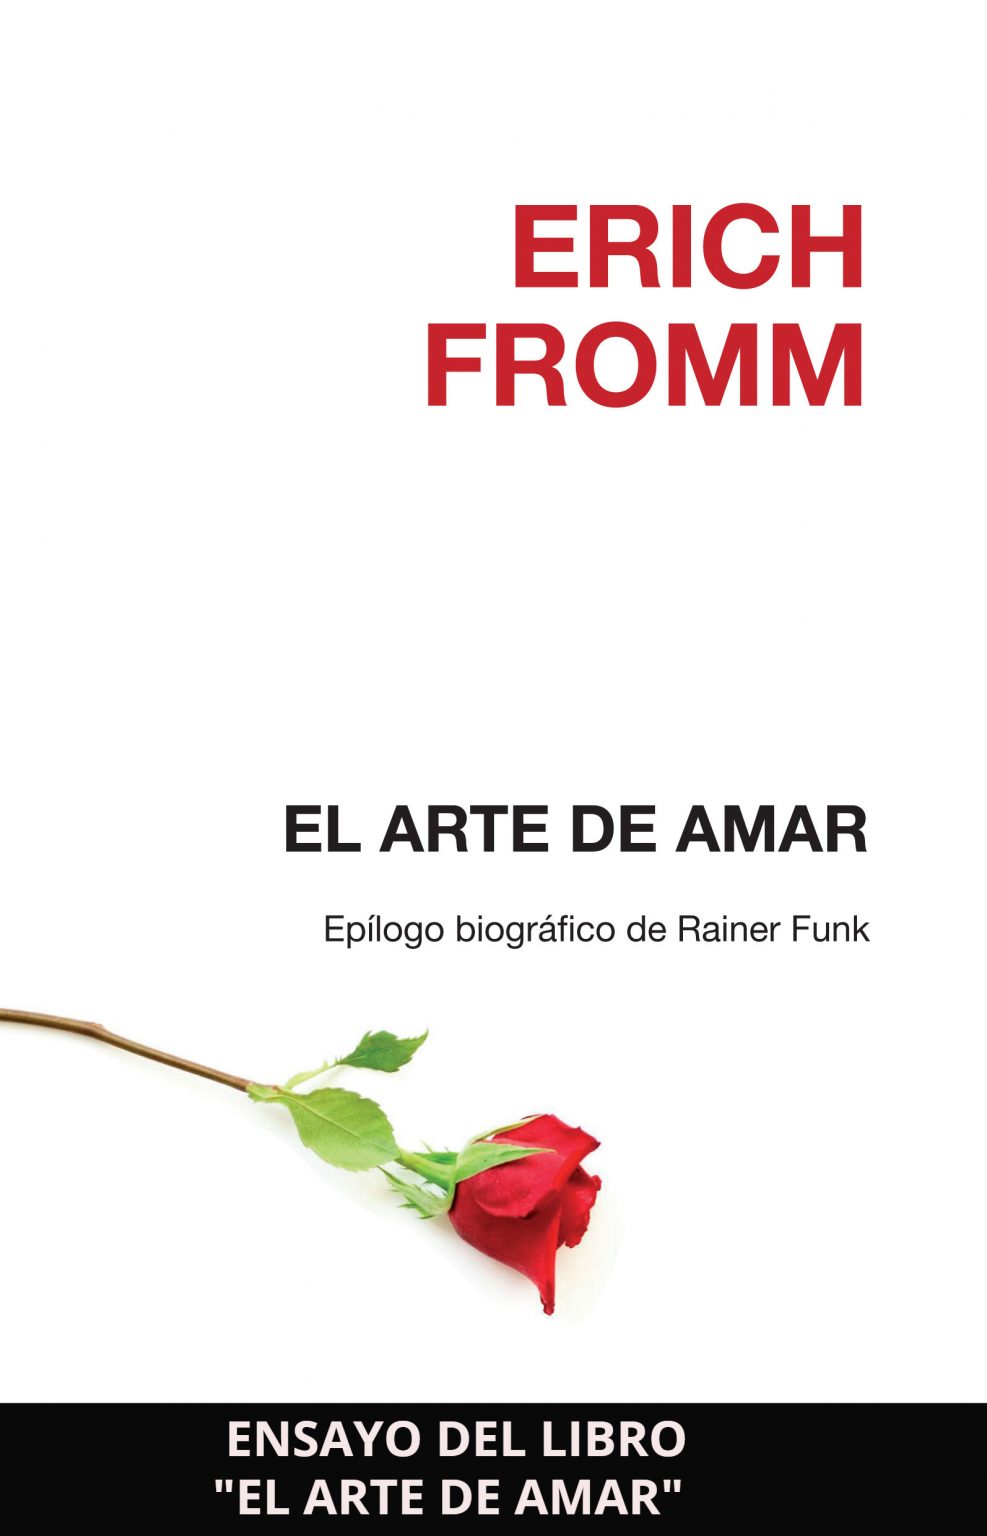 Ensayo del libro "El arte de amar" de Erich Fromm Ensayos Cortos